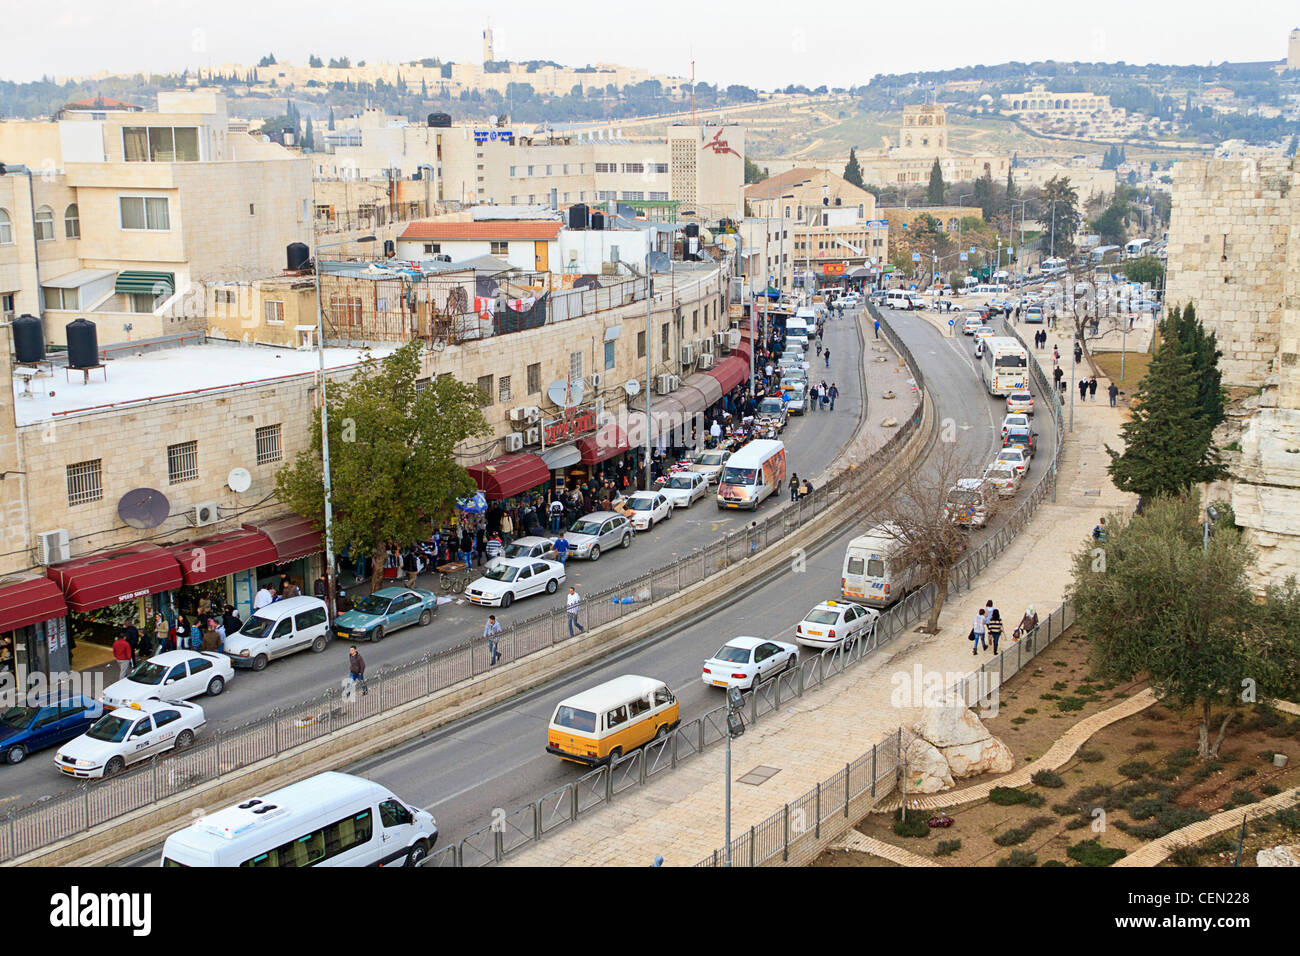 Rue de Jérusalem vue depuis les remparts, le mur qui entoure la vieille ville de Jérusalem en Israël. Banque D'Images